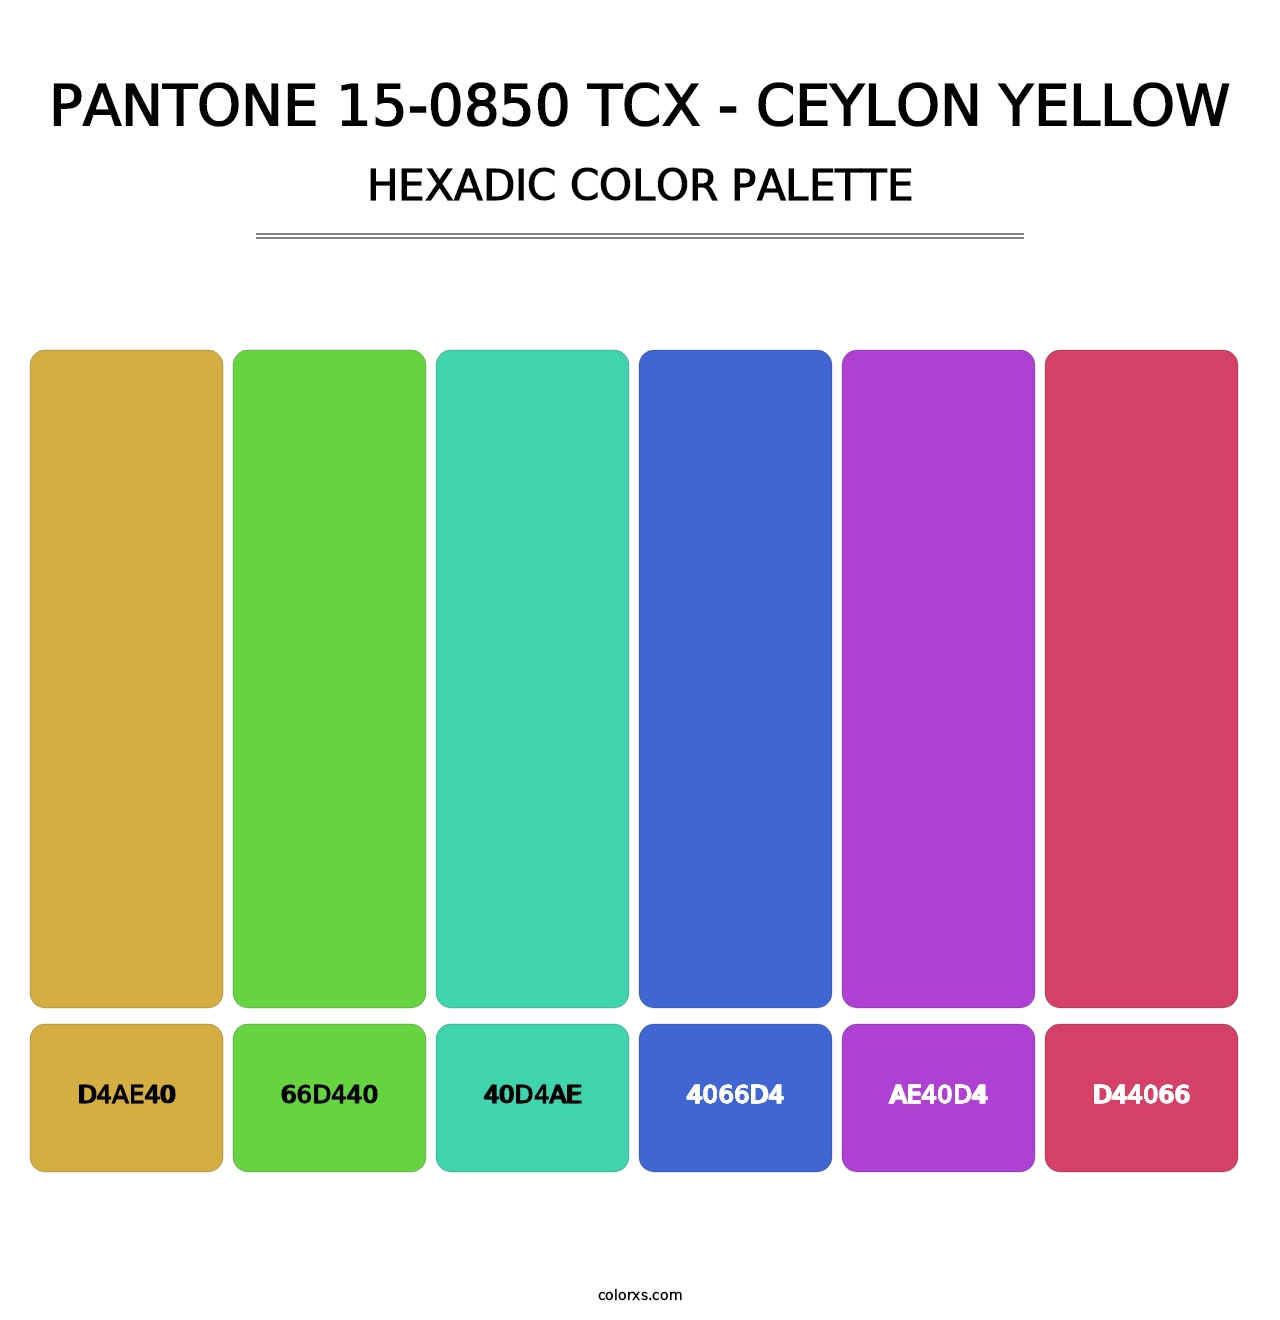 PANTONE 15-0850 TCX - Ceylon Yellow - Hexadic Color Palette